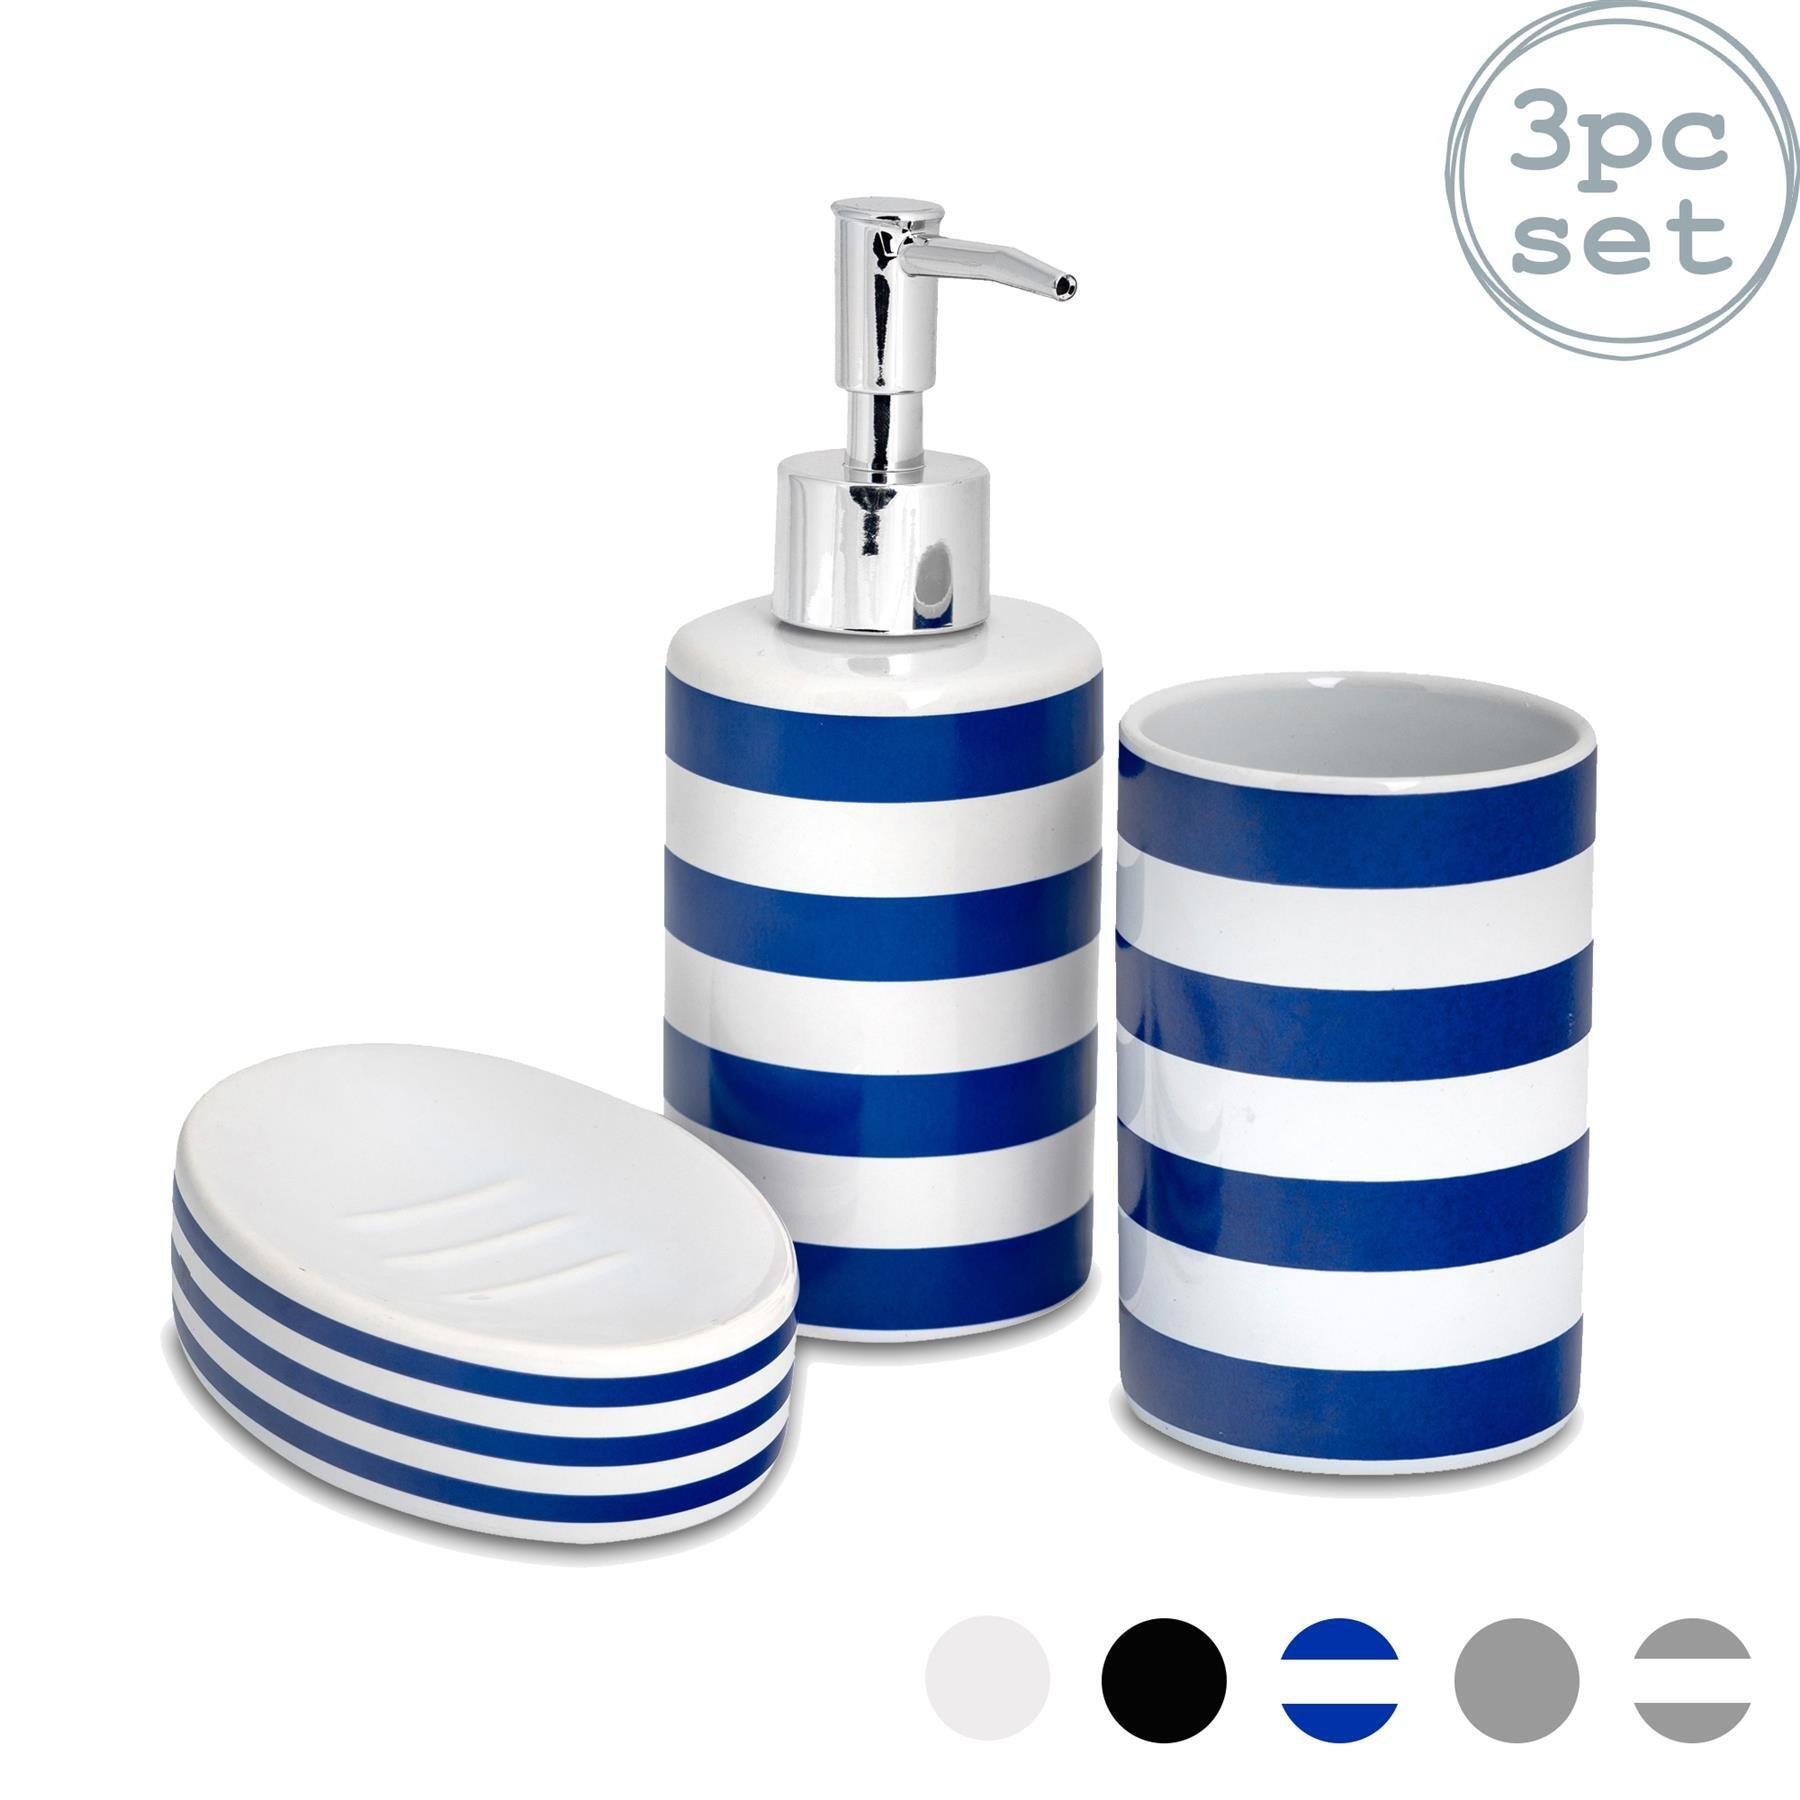 3 Piece Ceramic Bathroom Accessories Set - image 1